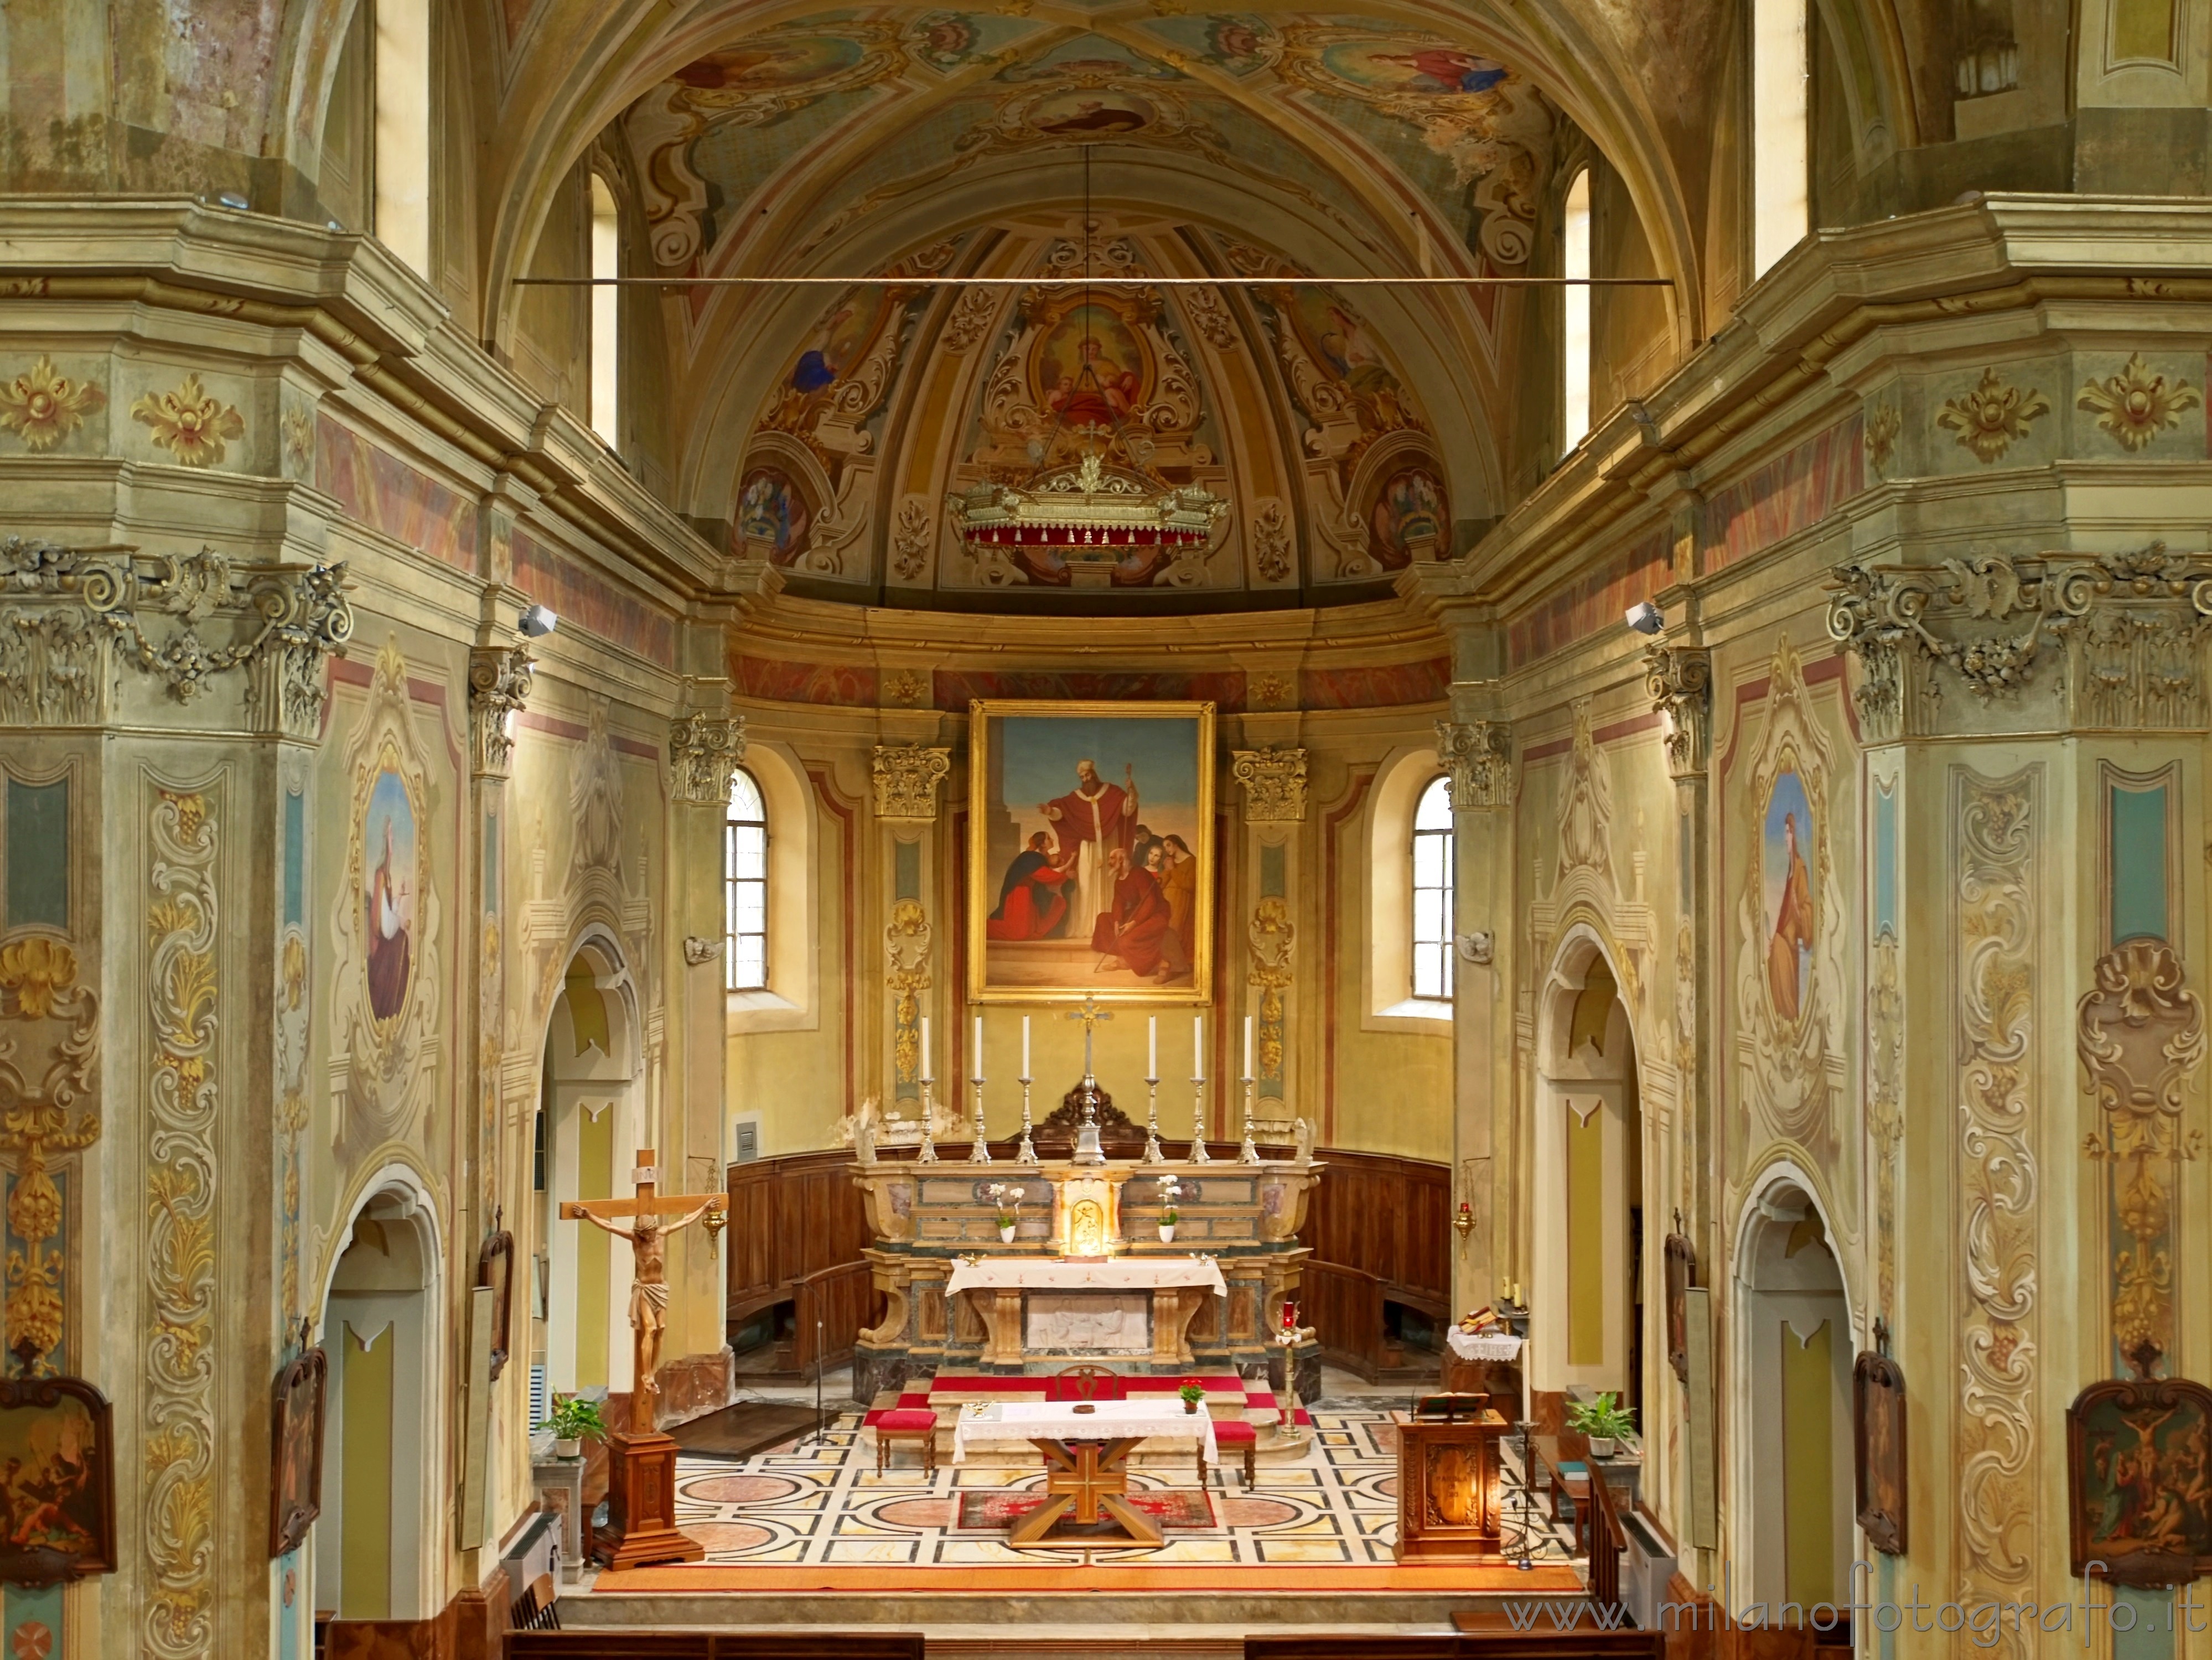 Tollegno (Biella, Italy): Aps of the Church of San Germano - Tollegno (Biella, Italy)